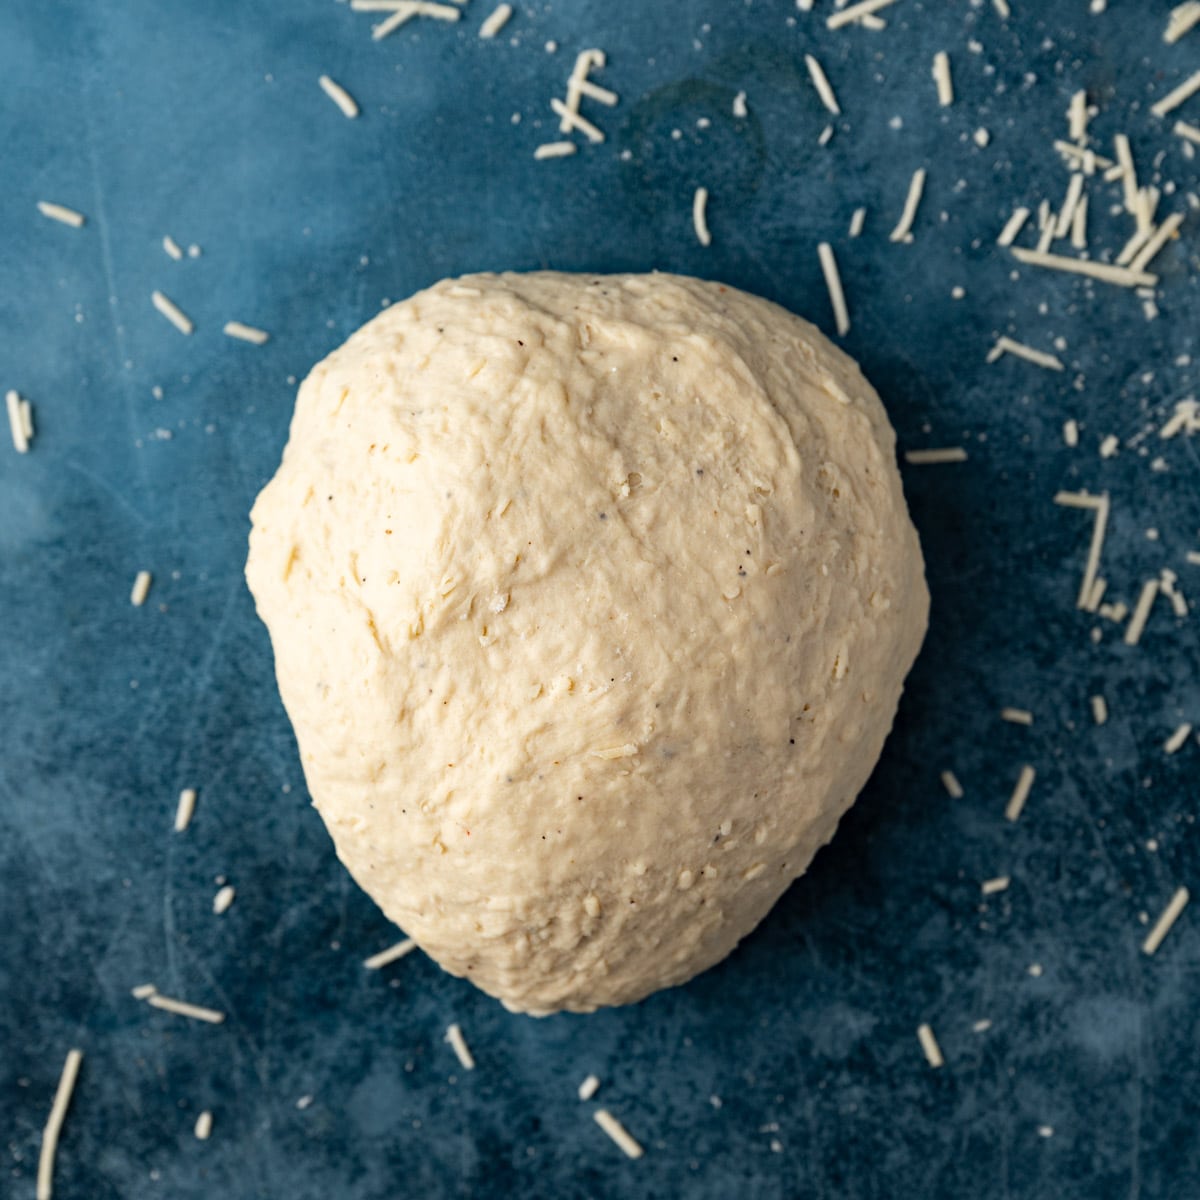 asiago bread dough on a counter